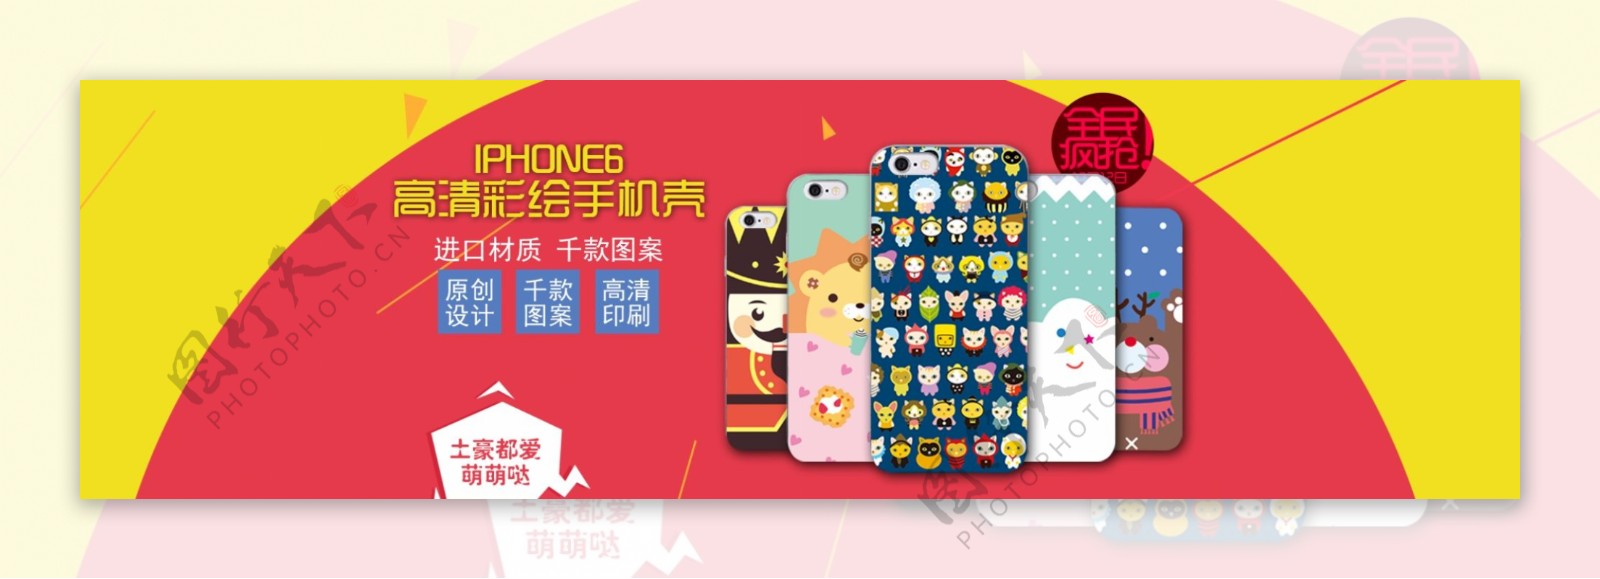 淘宝iPhone6S手机壳促销海报